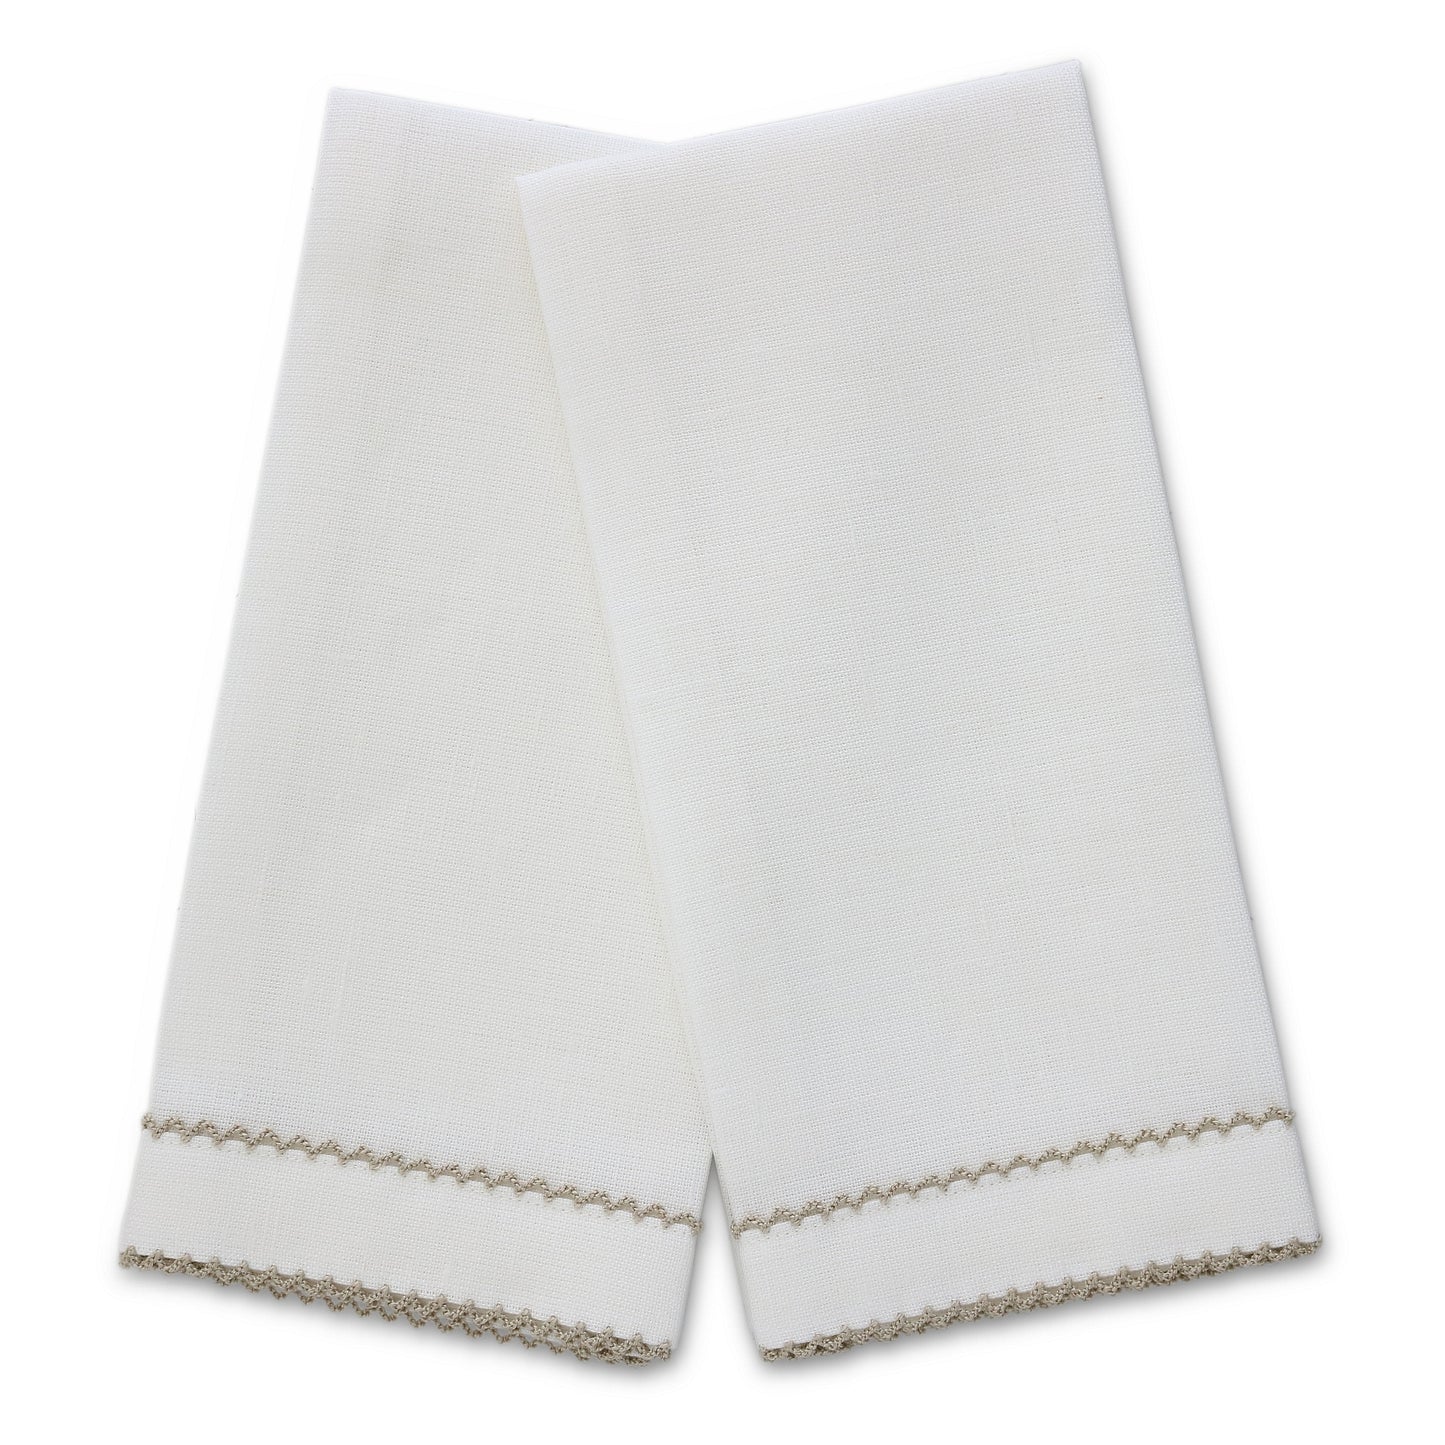 Asciugamani per gli ospiti in lino con rifiniture a doppio Picot su ordinazione (ciascuno)